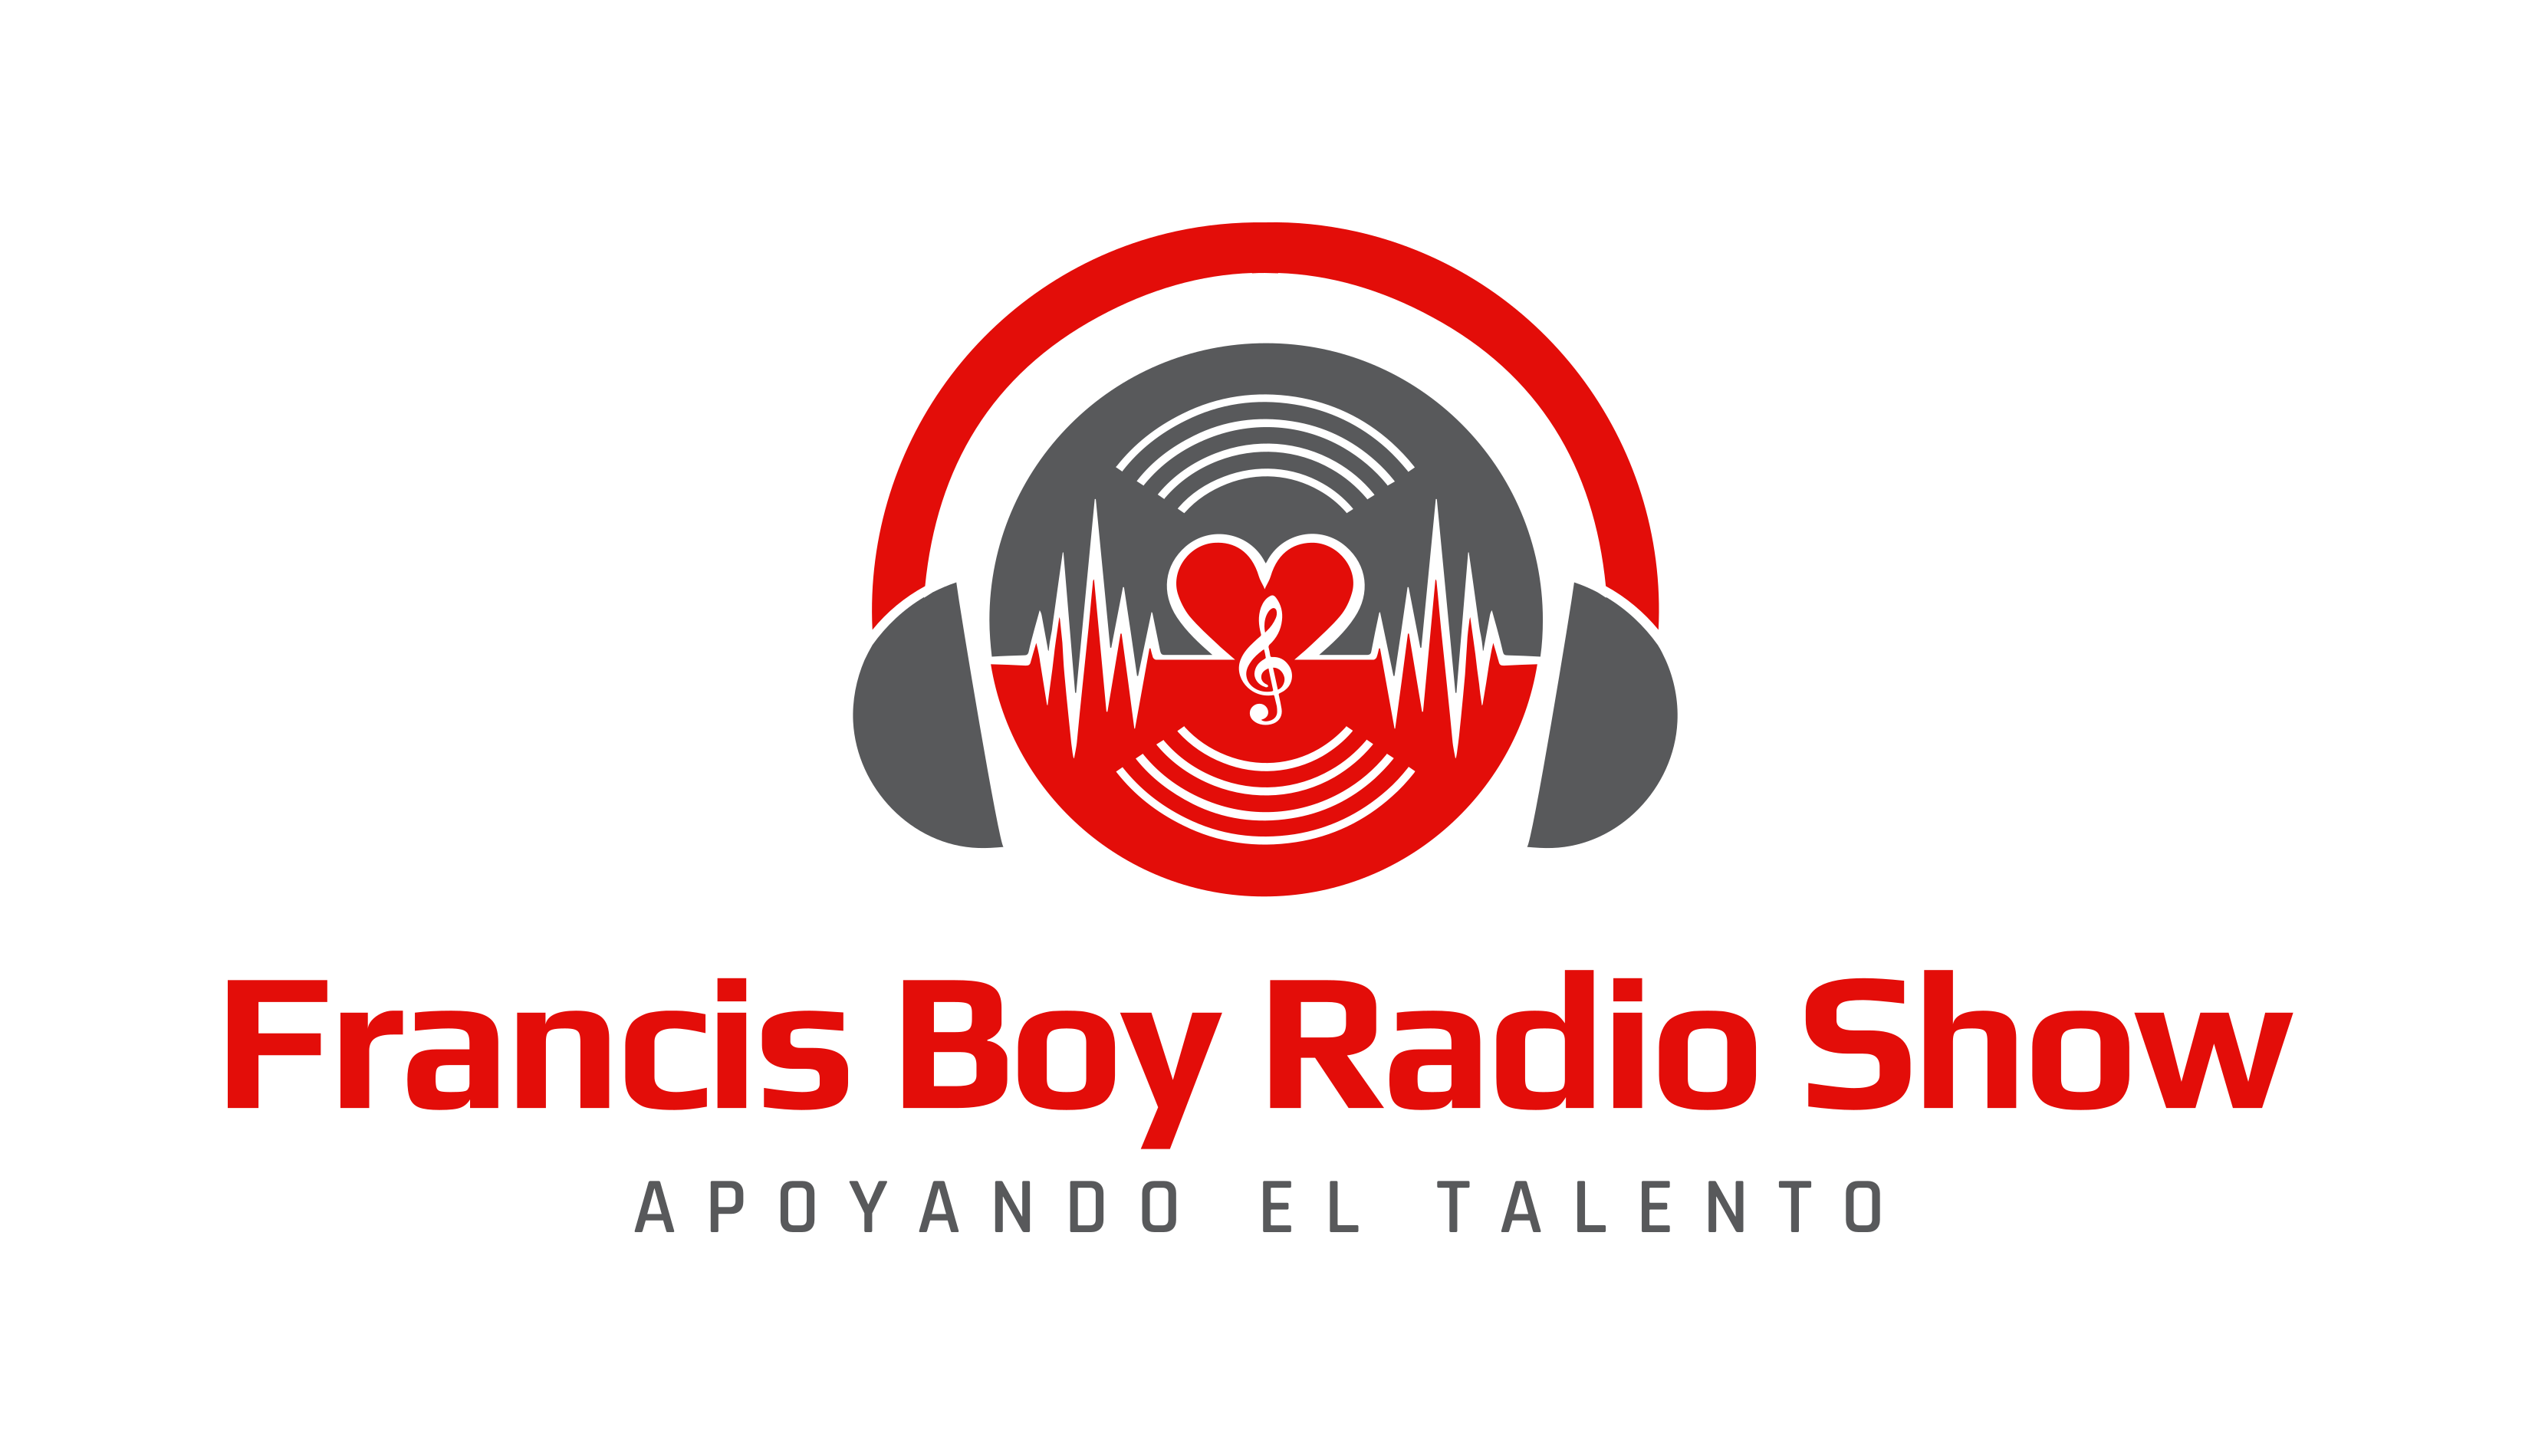 FRANCIS BOY RADIO SHOW